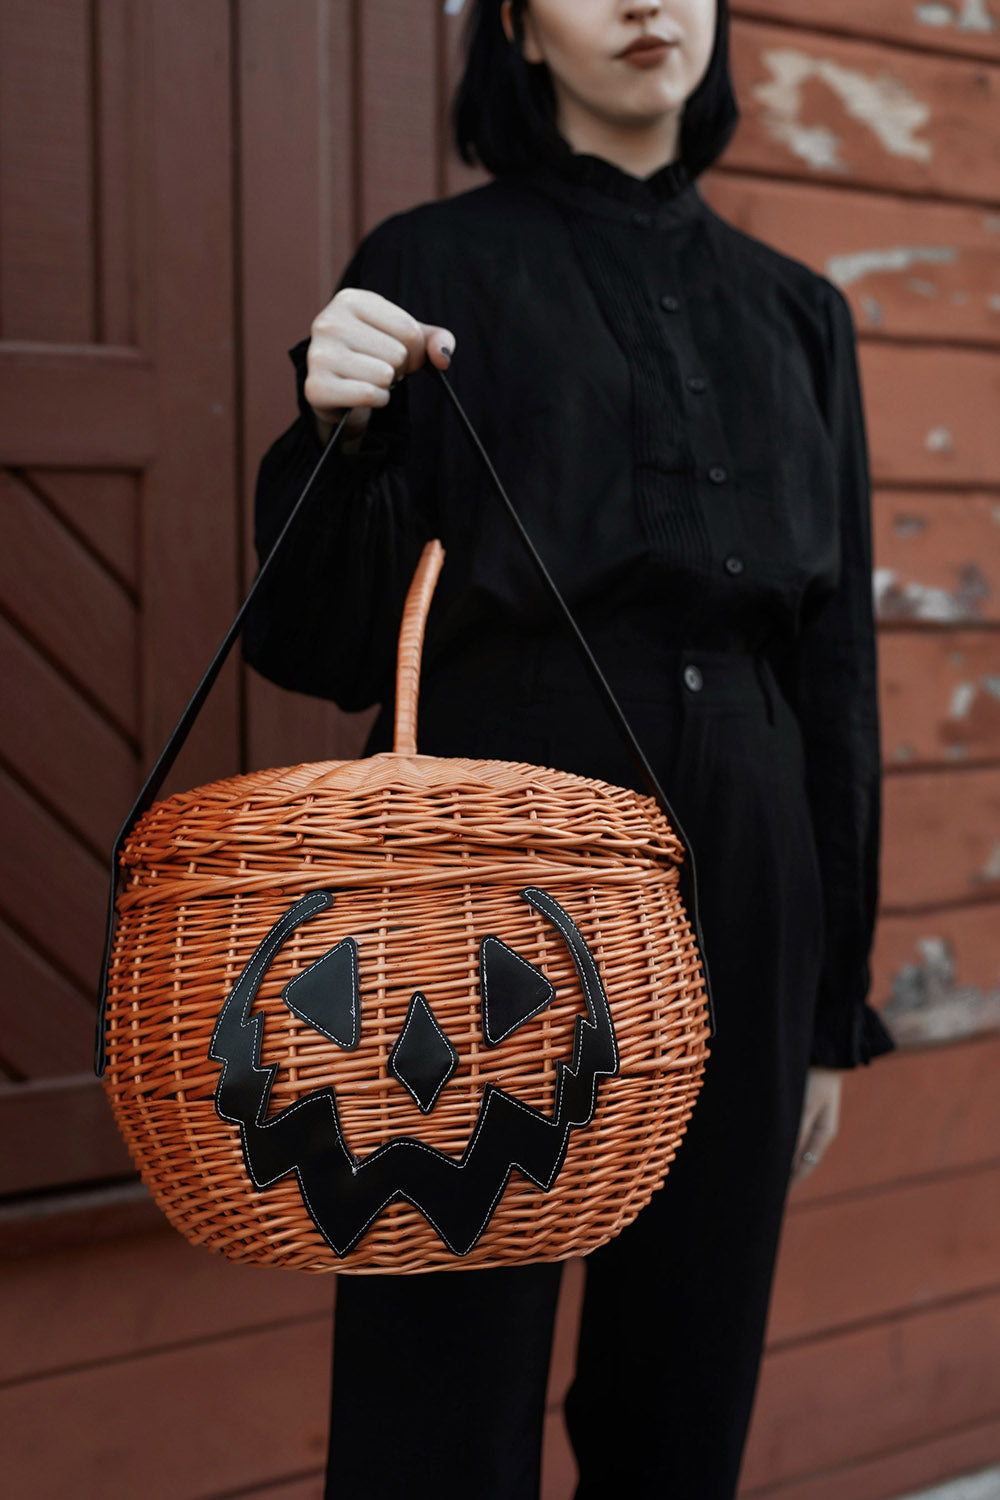 pumpkin purse